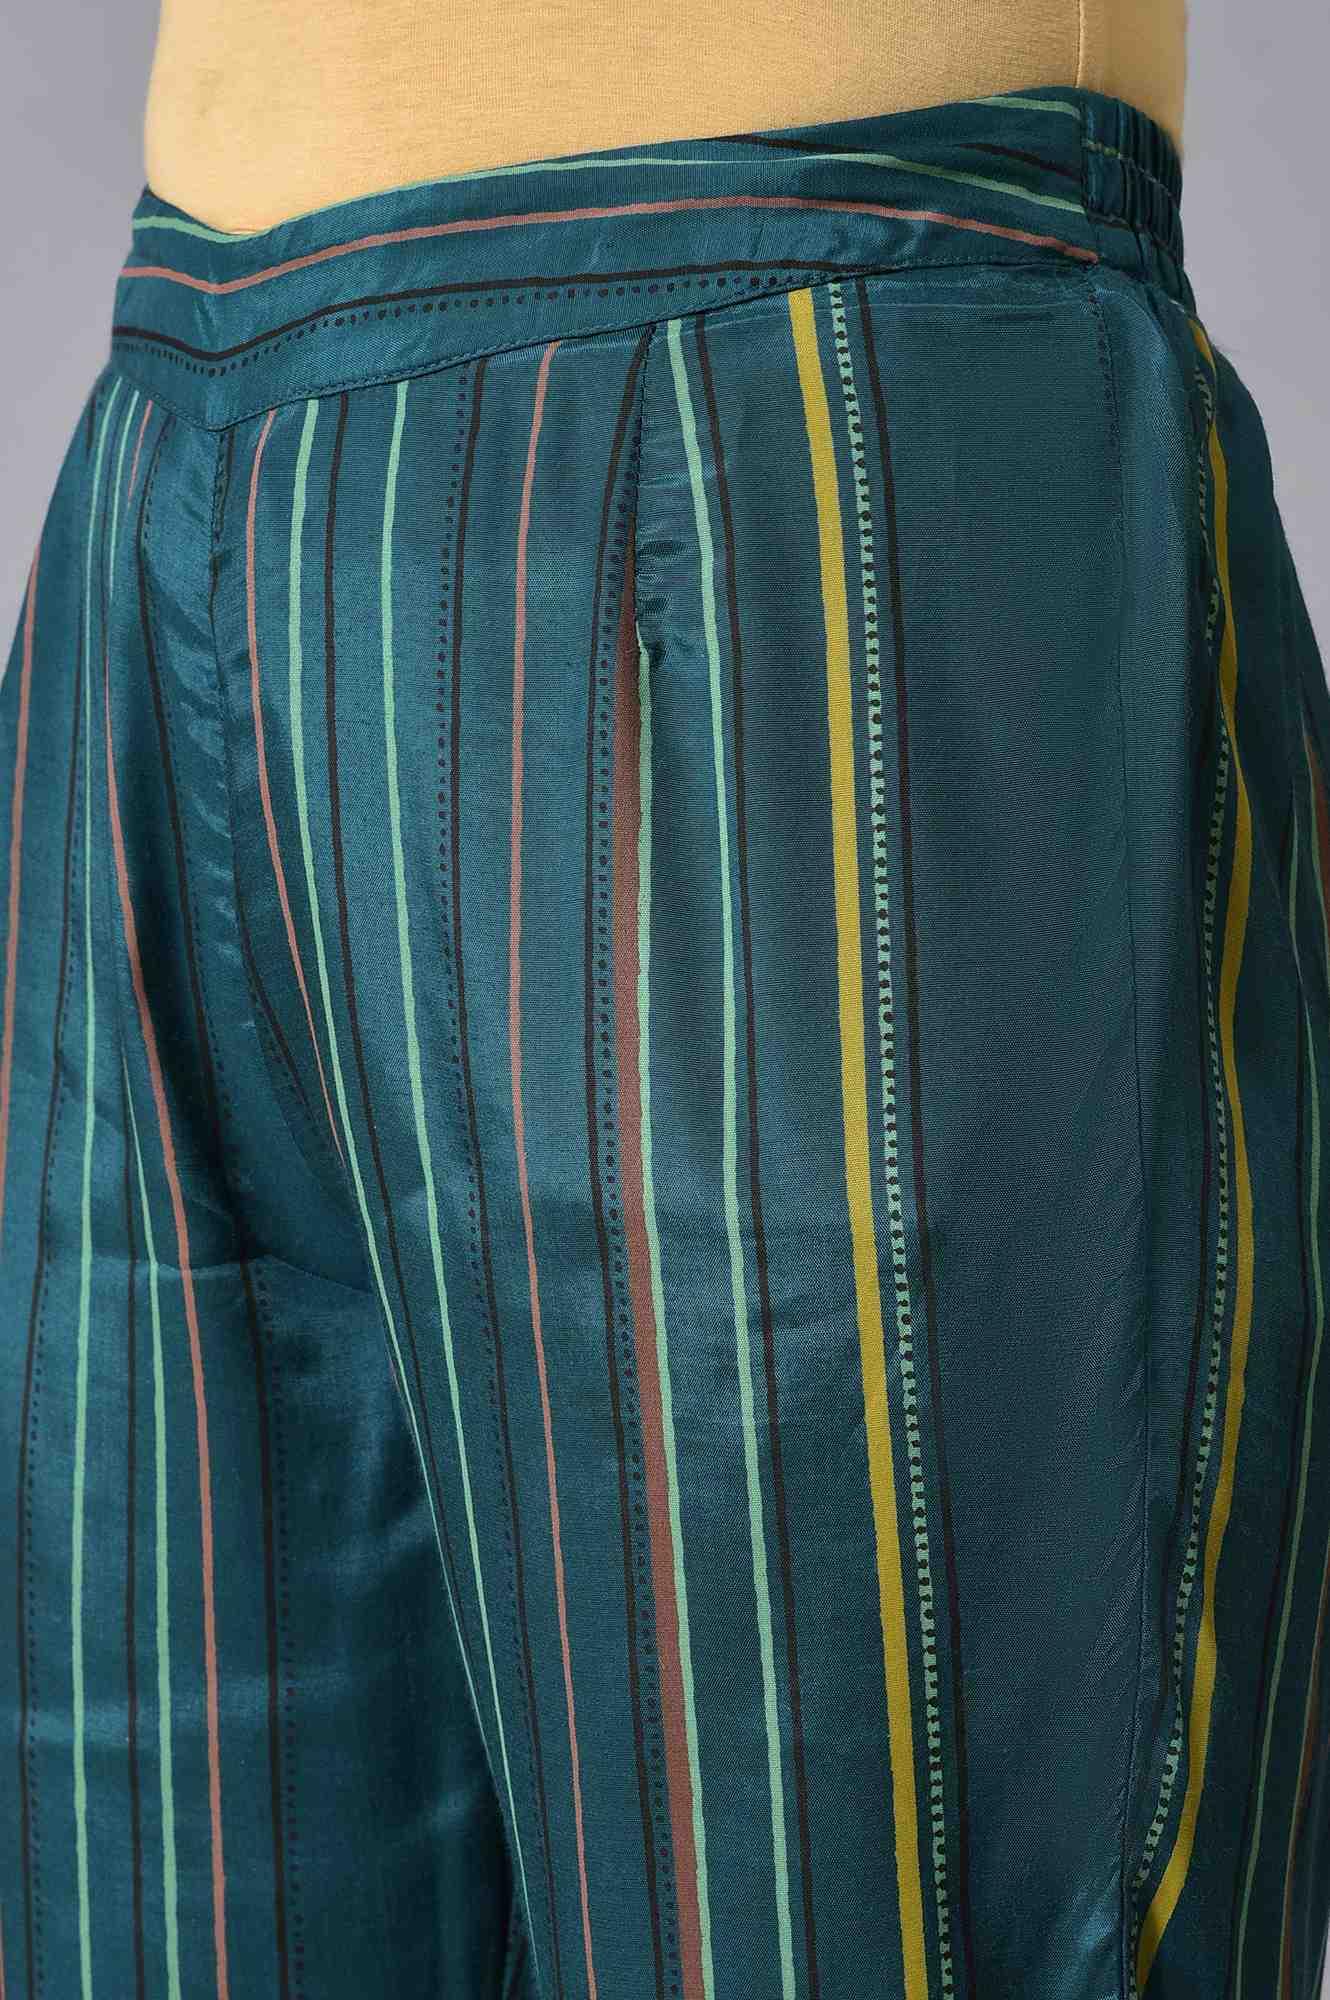 Teal Printed Embellished kurta Pant Set - wforwoman